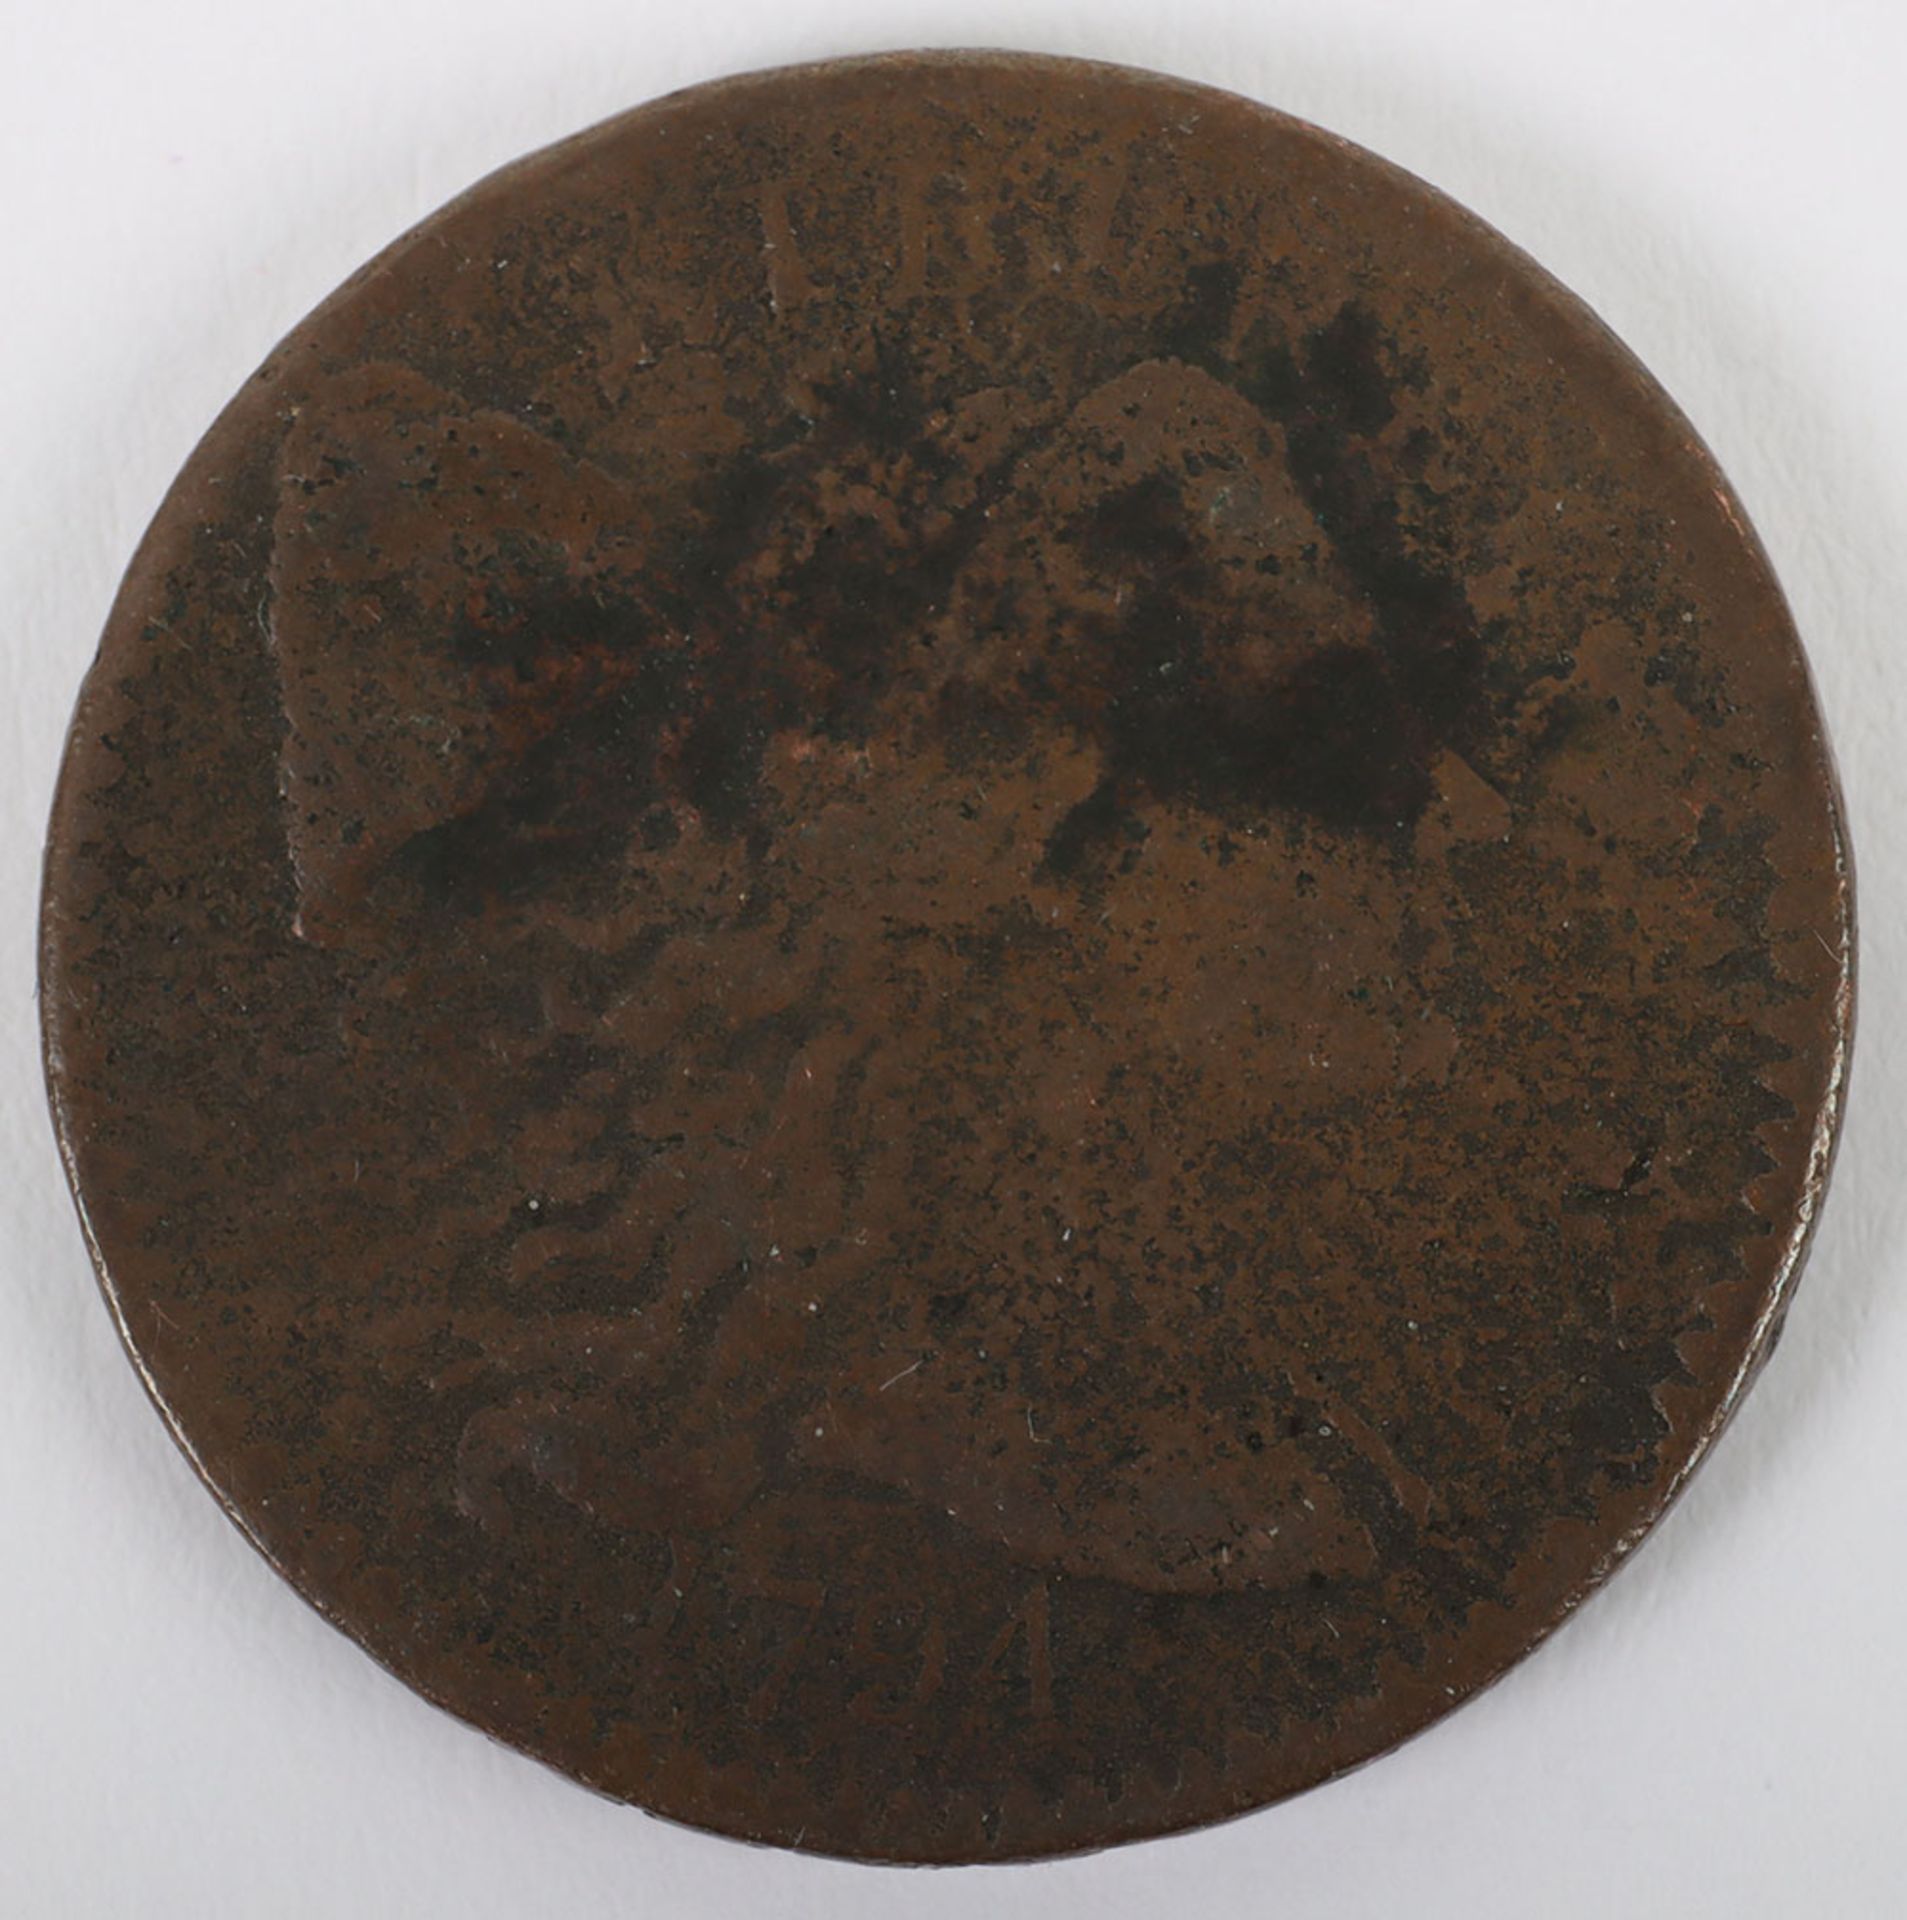 USA One Cent 1794, Liberty Cap